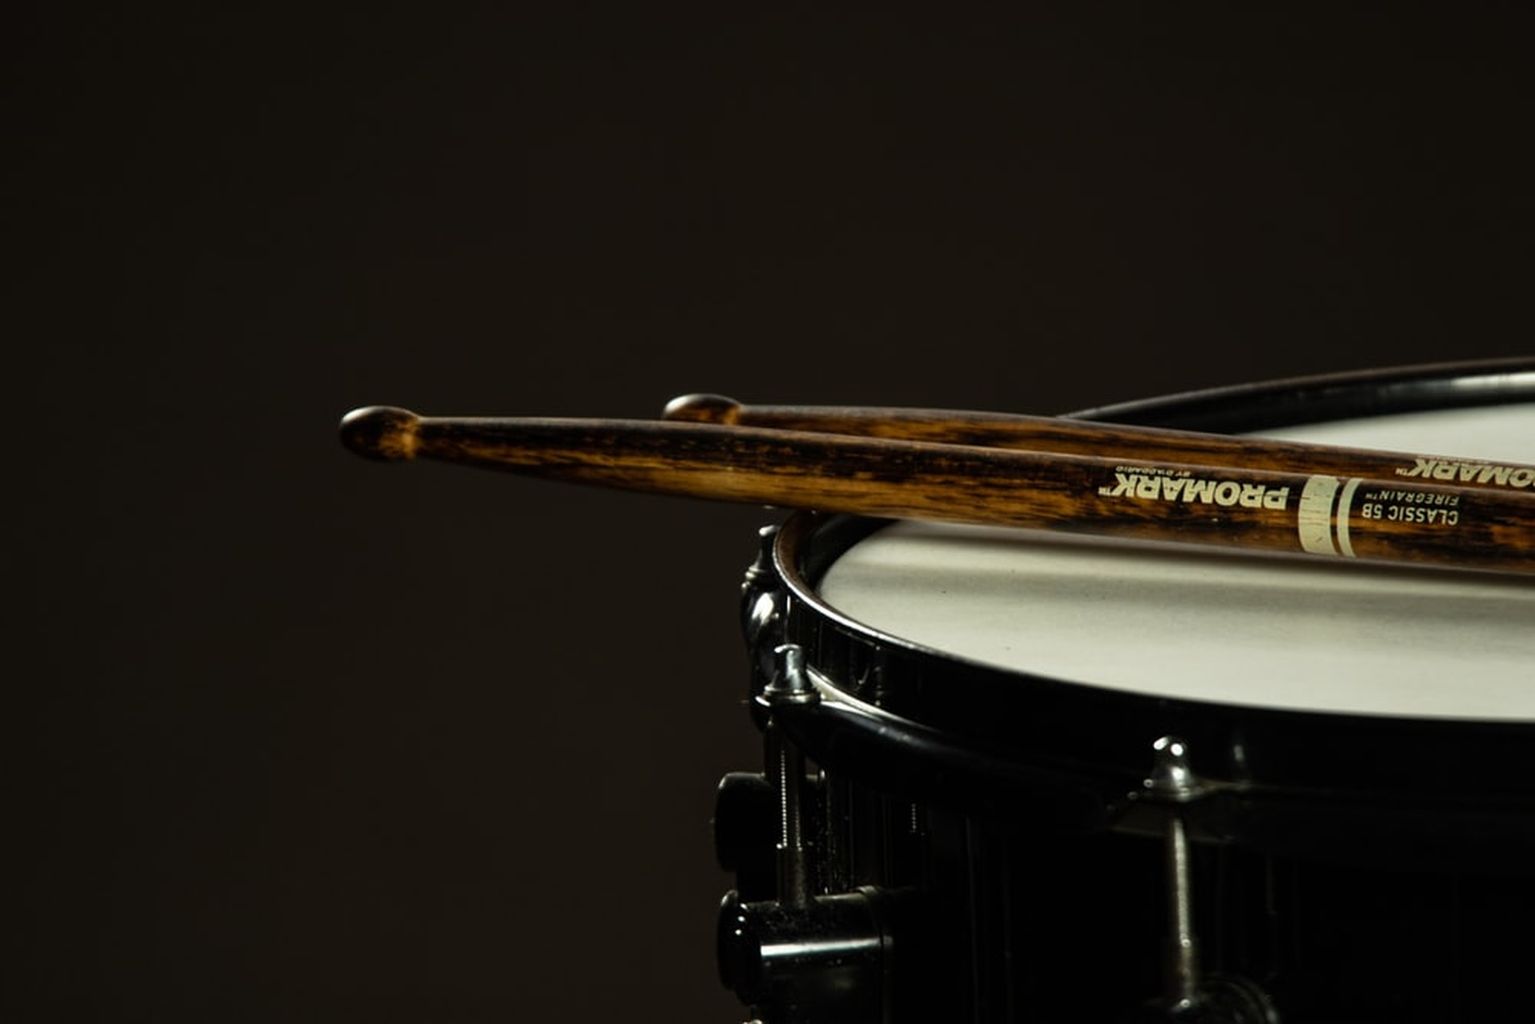 wallpaper gambar snare drum